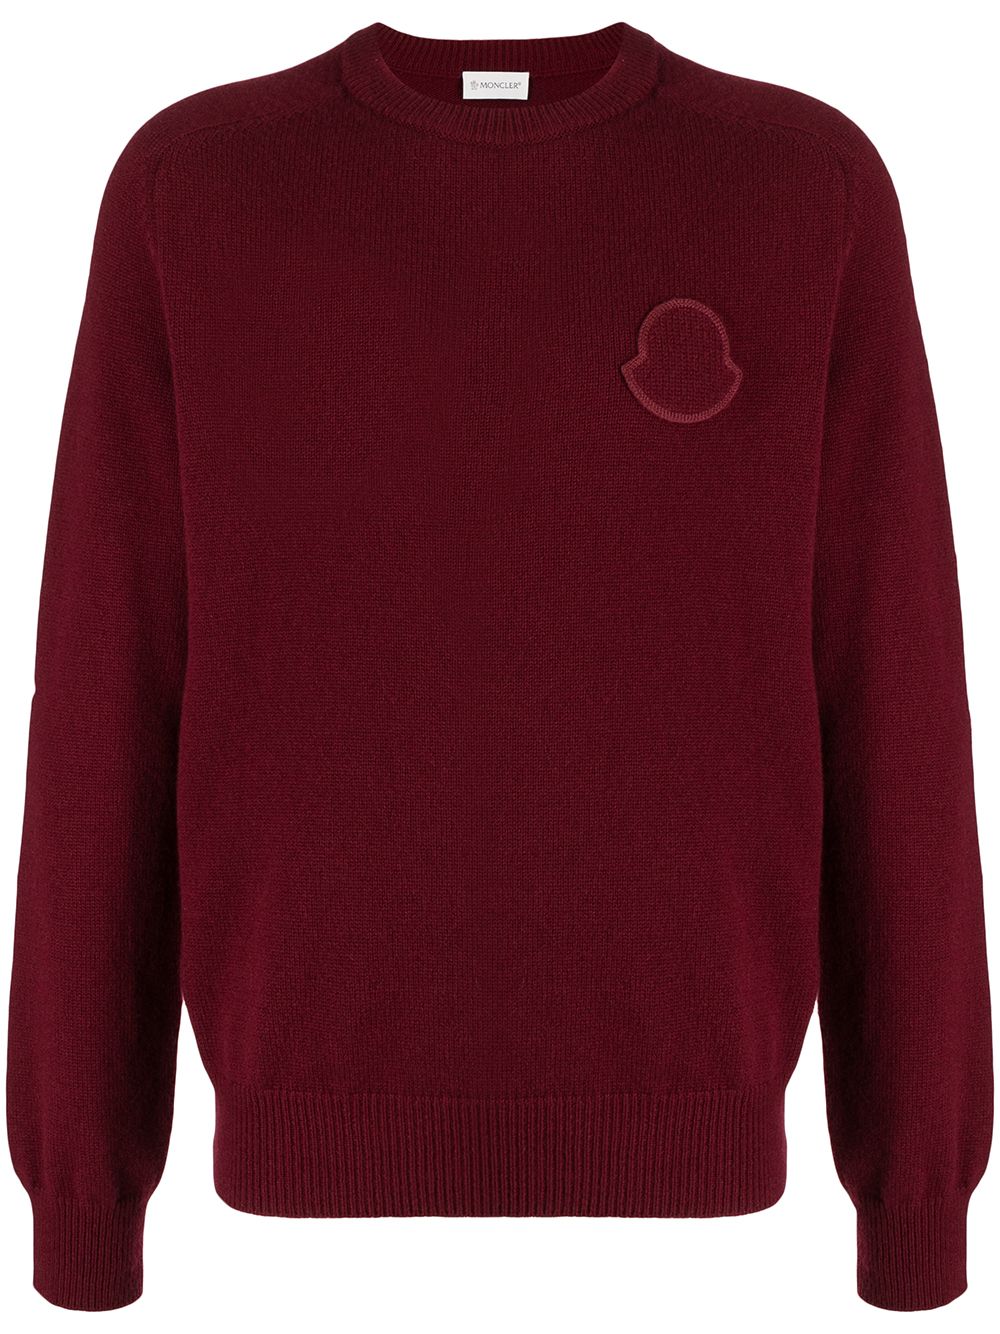 фото Moncler свитер с логотипом